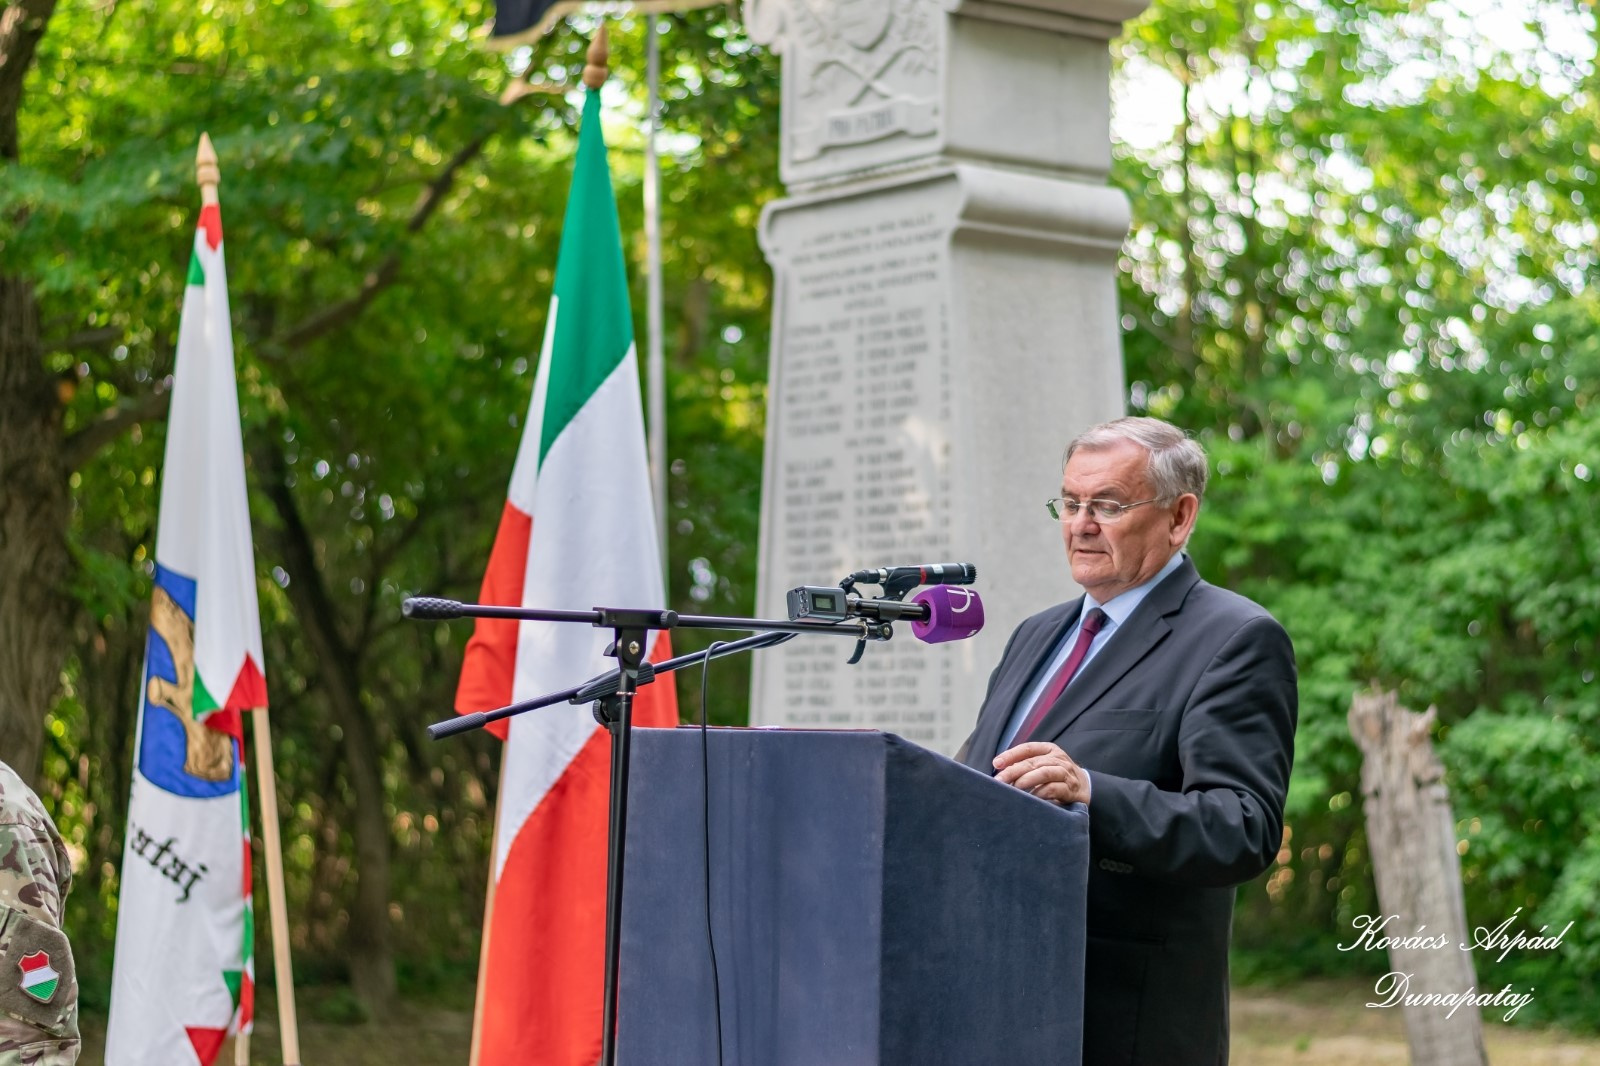 Lezsák Sándor (Magyarország Országgyűlésének alelnöke) beszédet